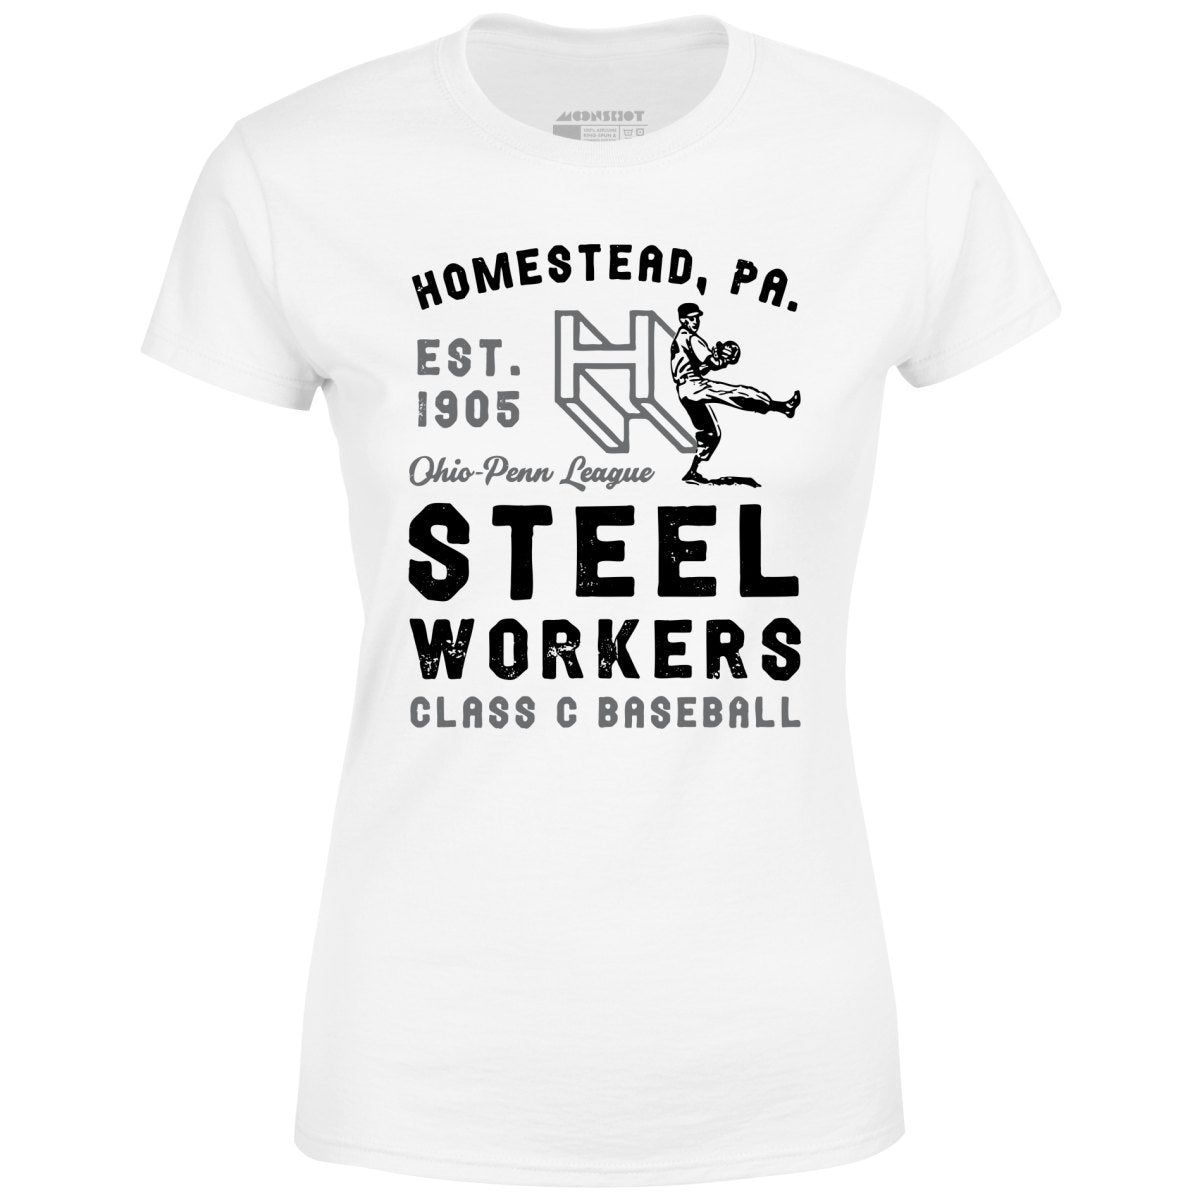 Homestead Steel Workers - Pennsylvania - Vintage Defunct Baseball Teams - Women's T-Shirt